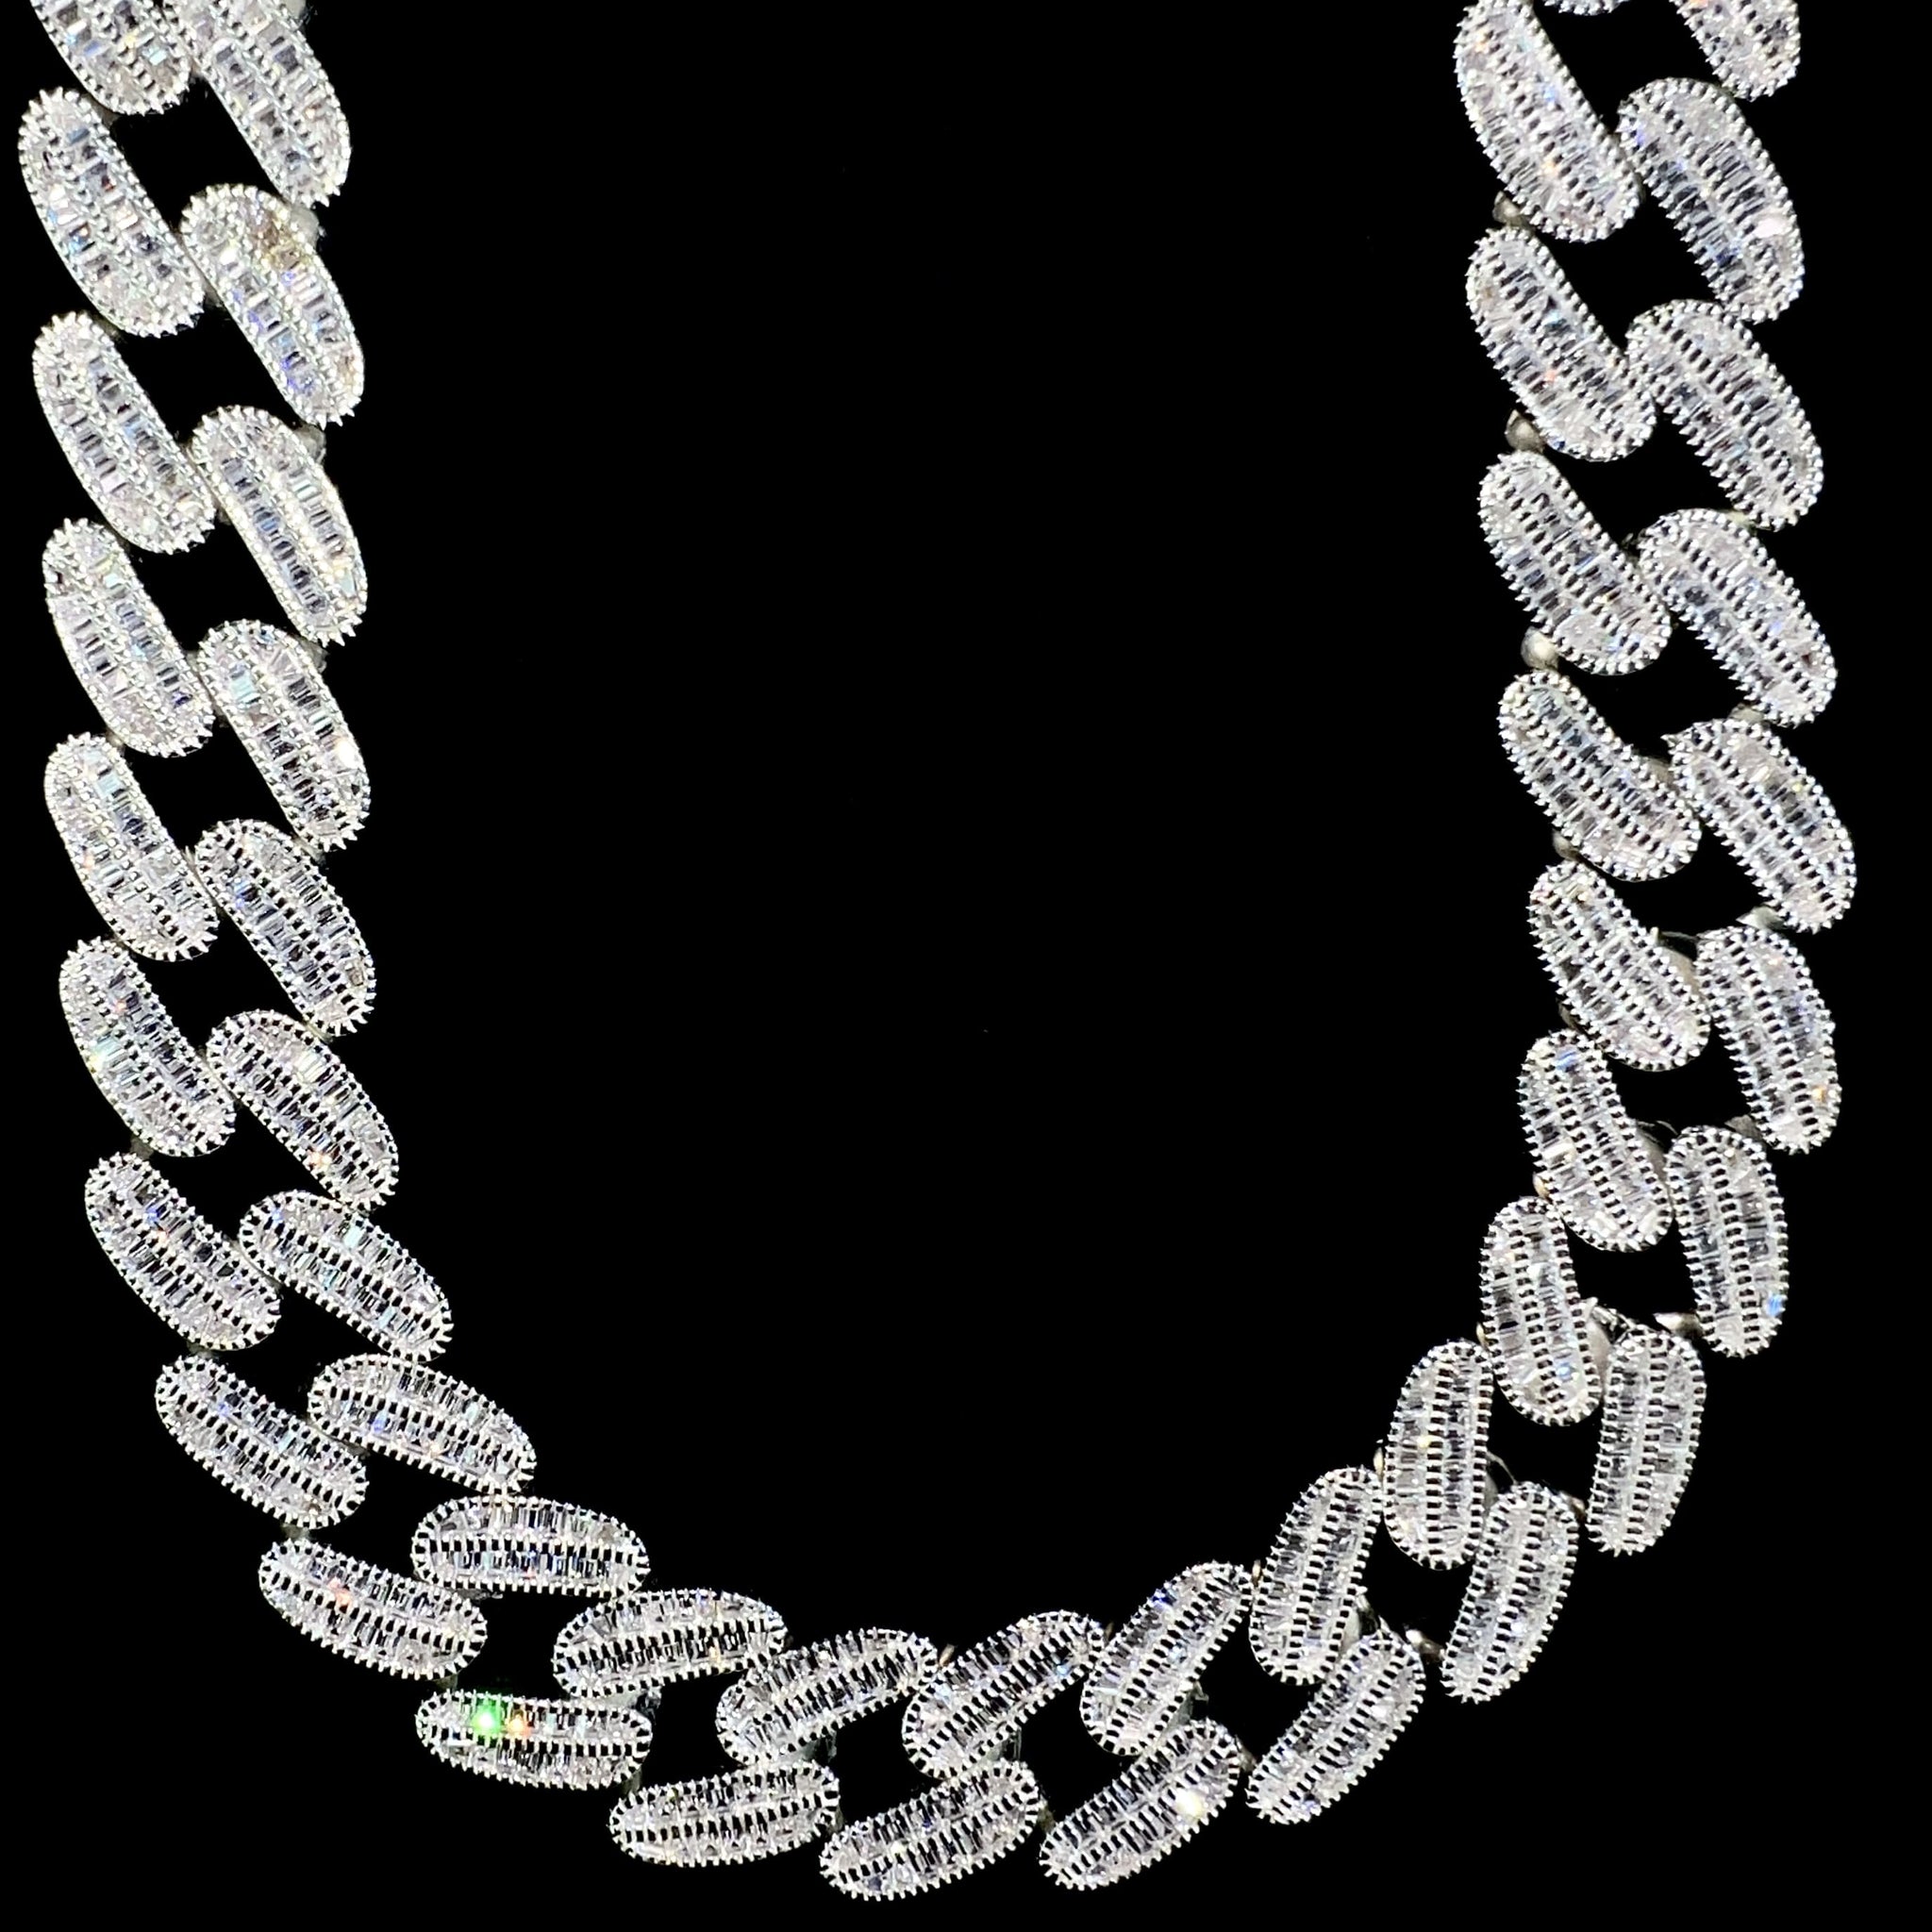 Baguette Cuban Link Chain - 60cm / 16mm - Silver 925 - Sehgal Dubai Collection